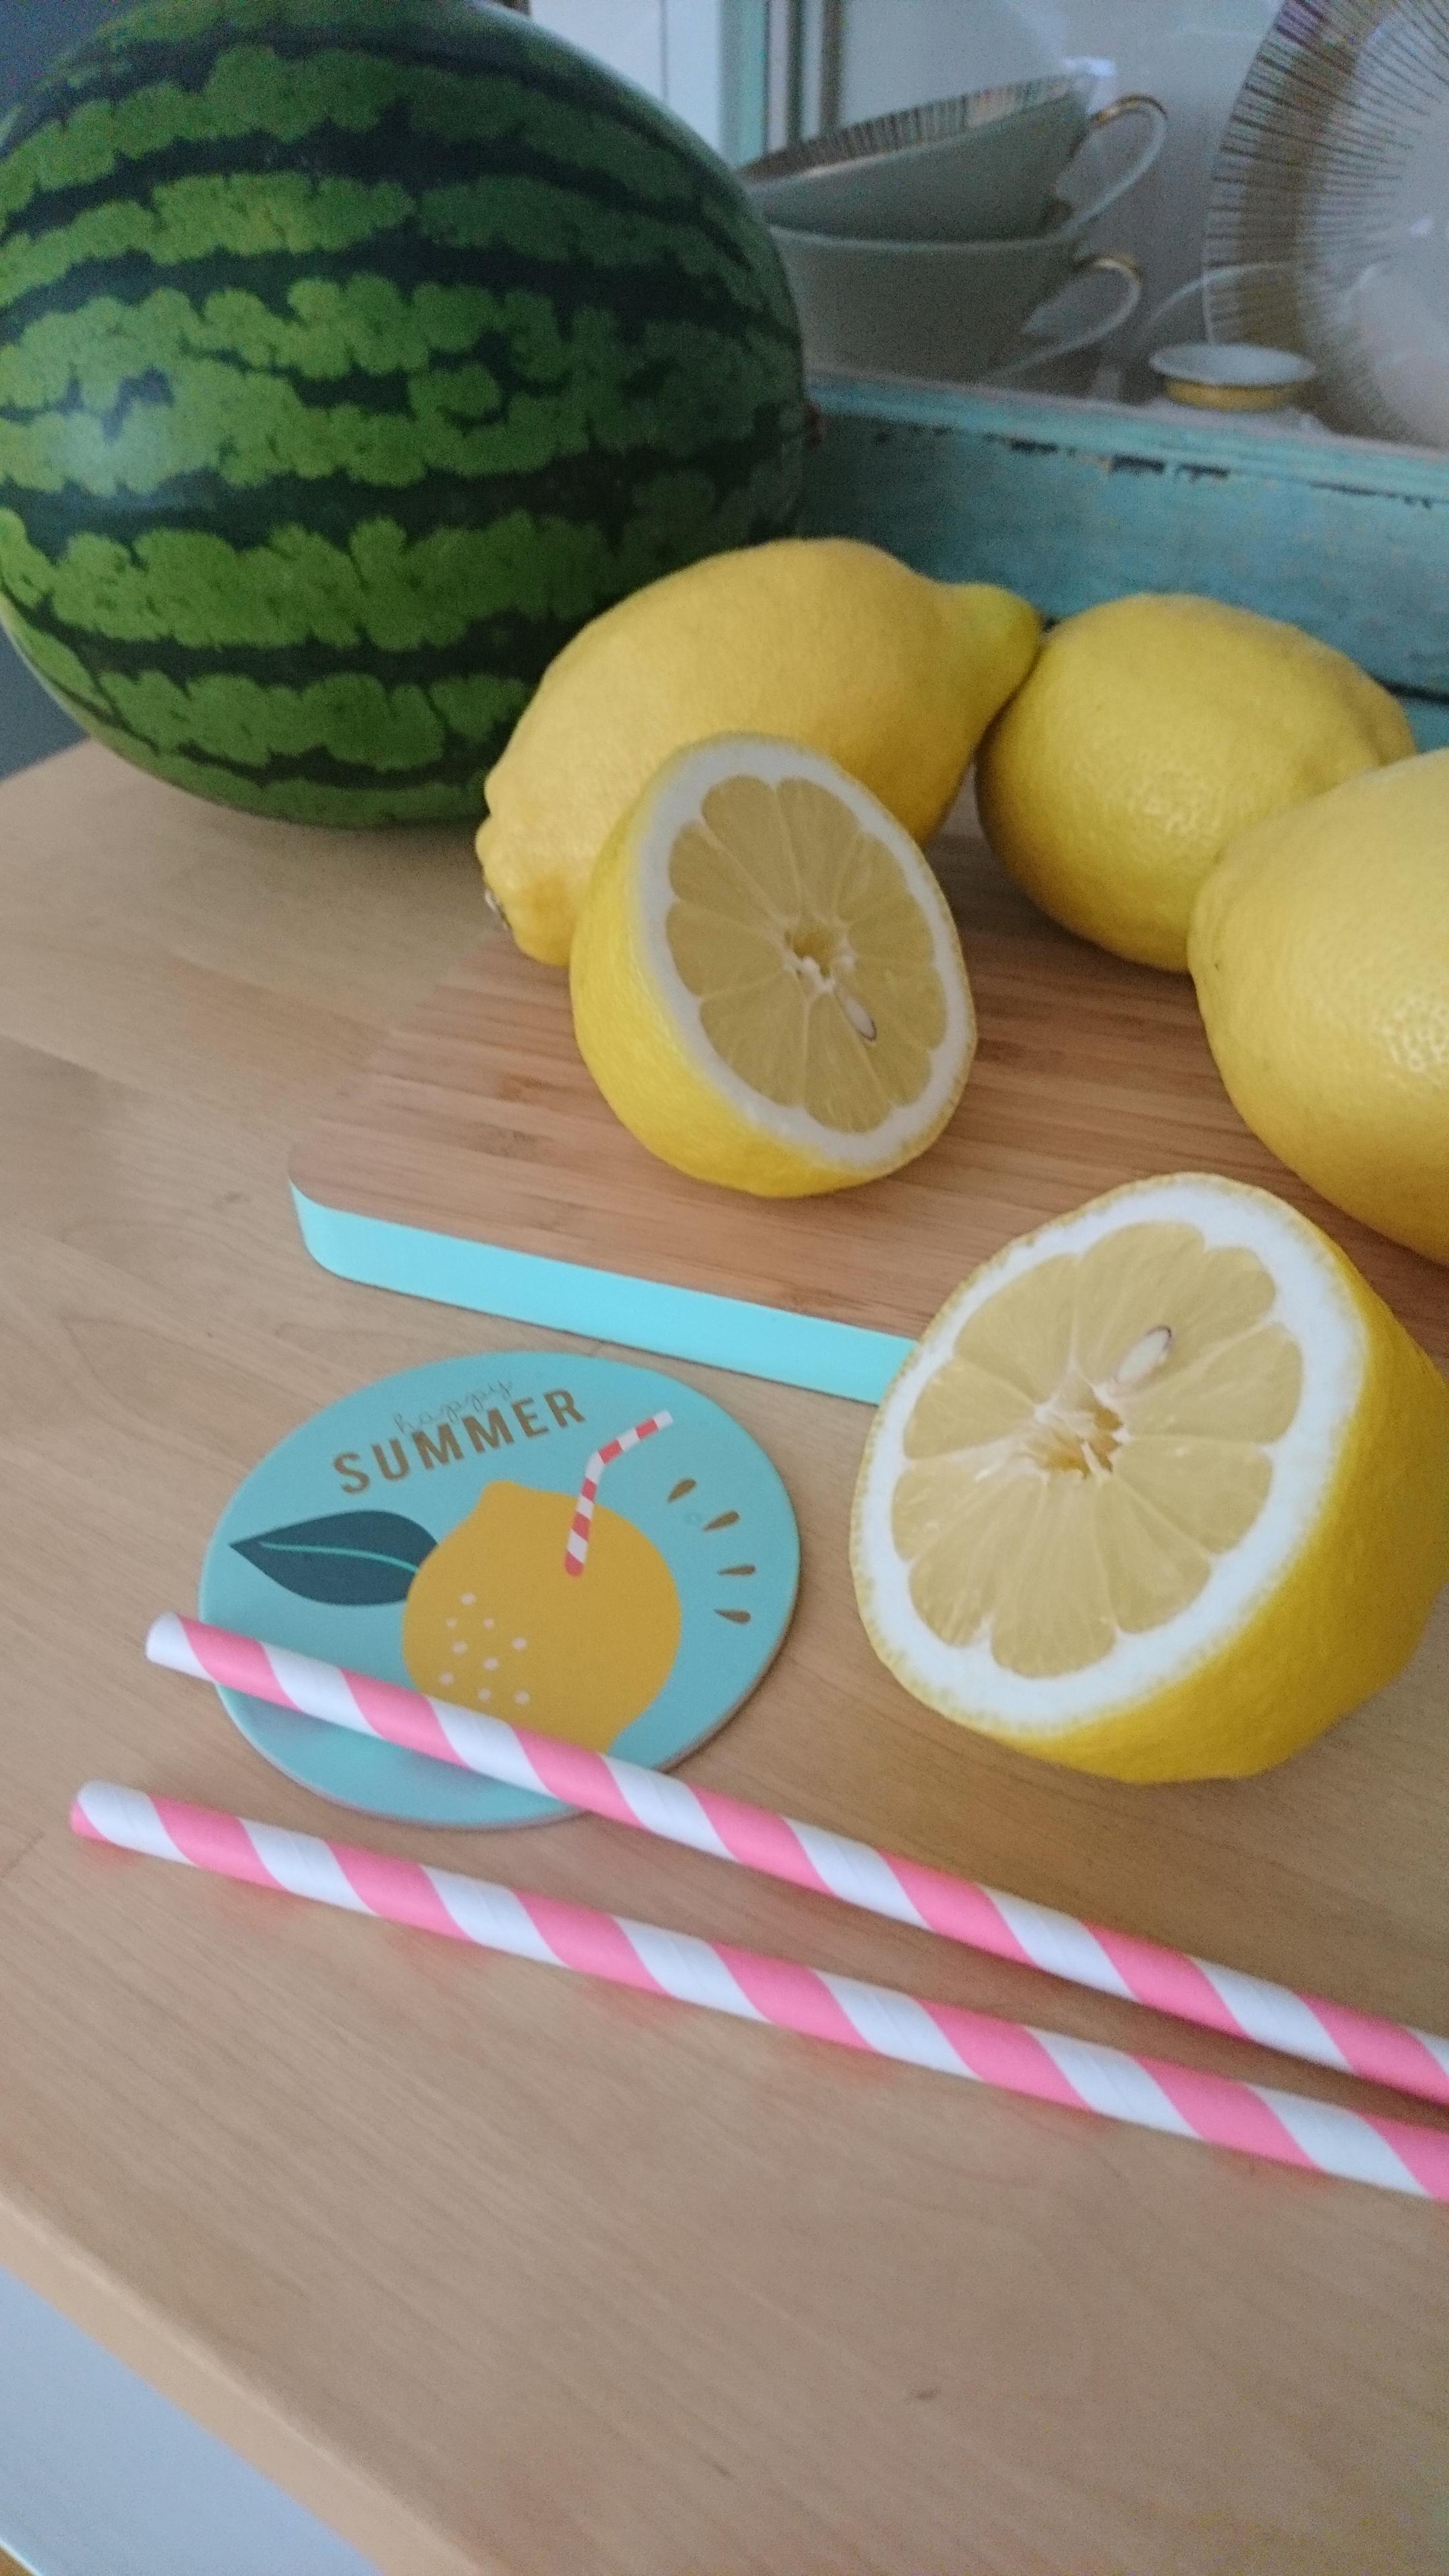 Melone & Zitrone 🍋
#sommer #küche